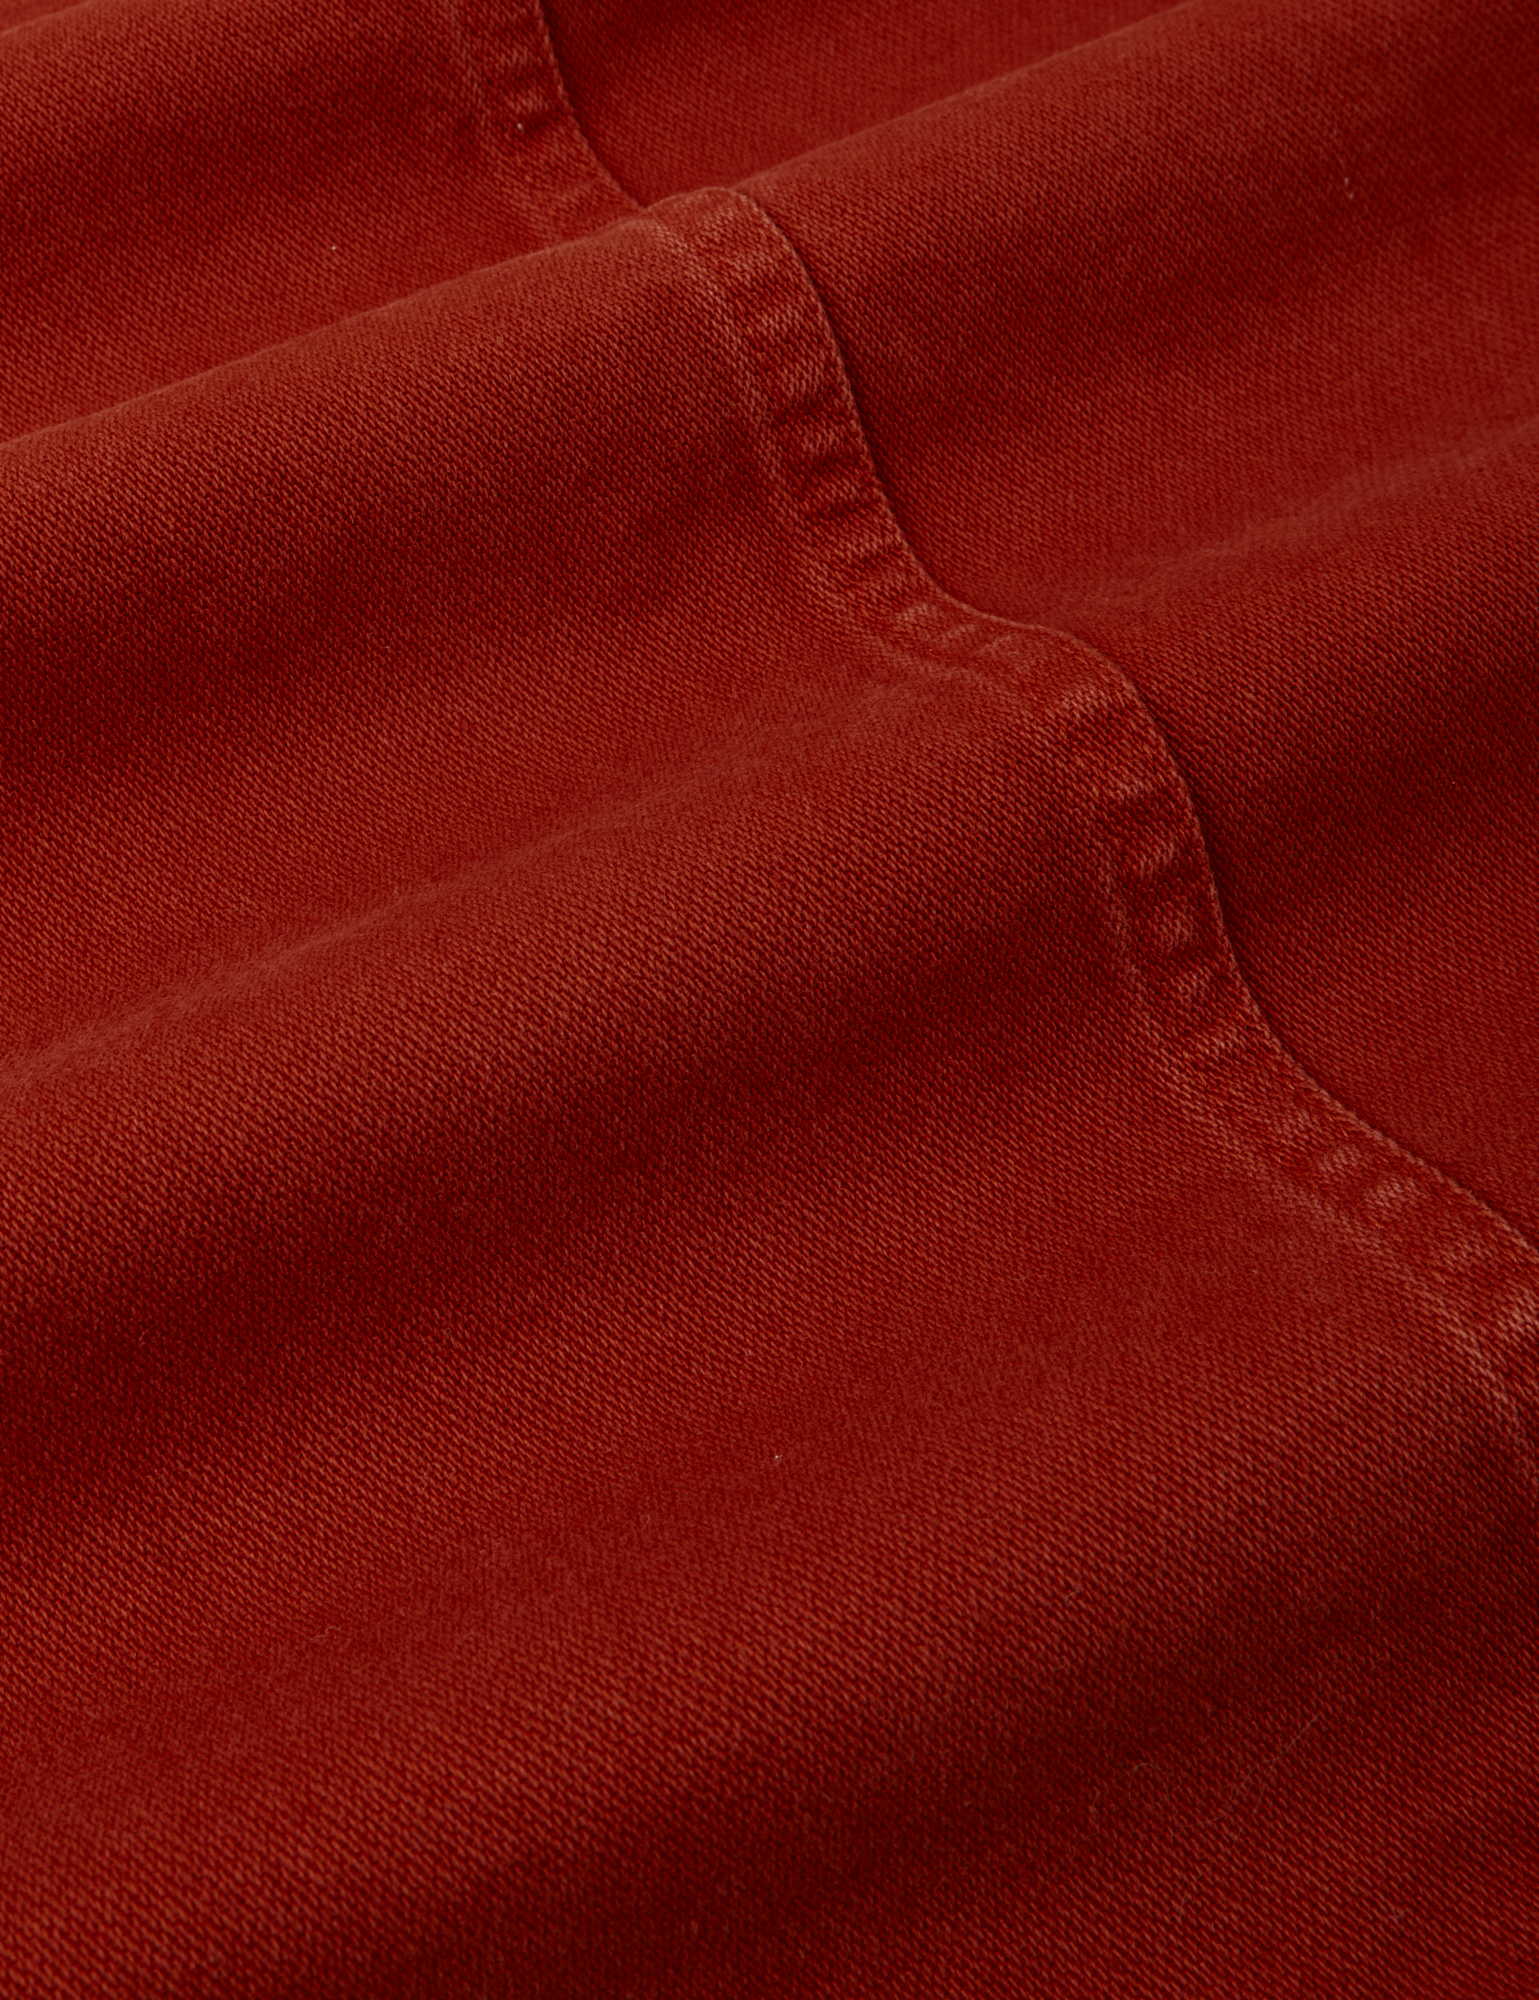 Denim Work Jacket in Paprika fabric detail